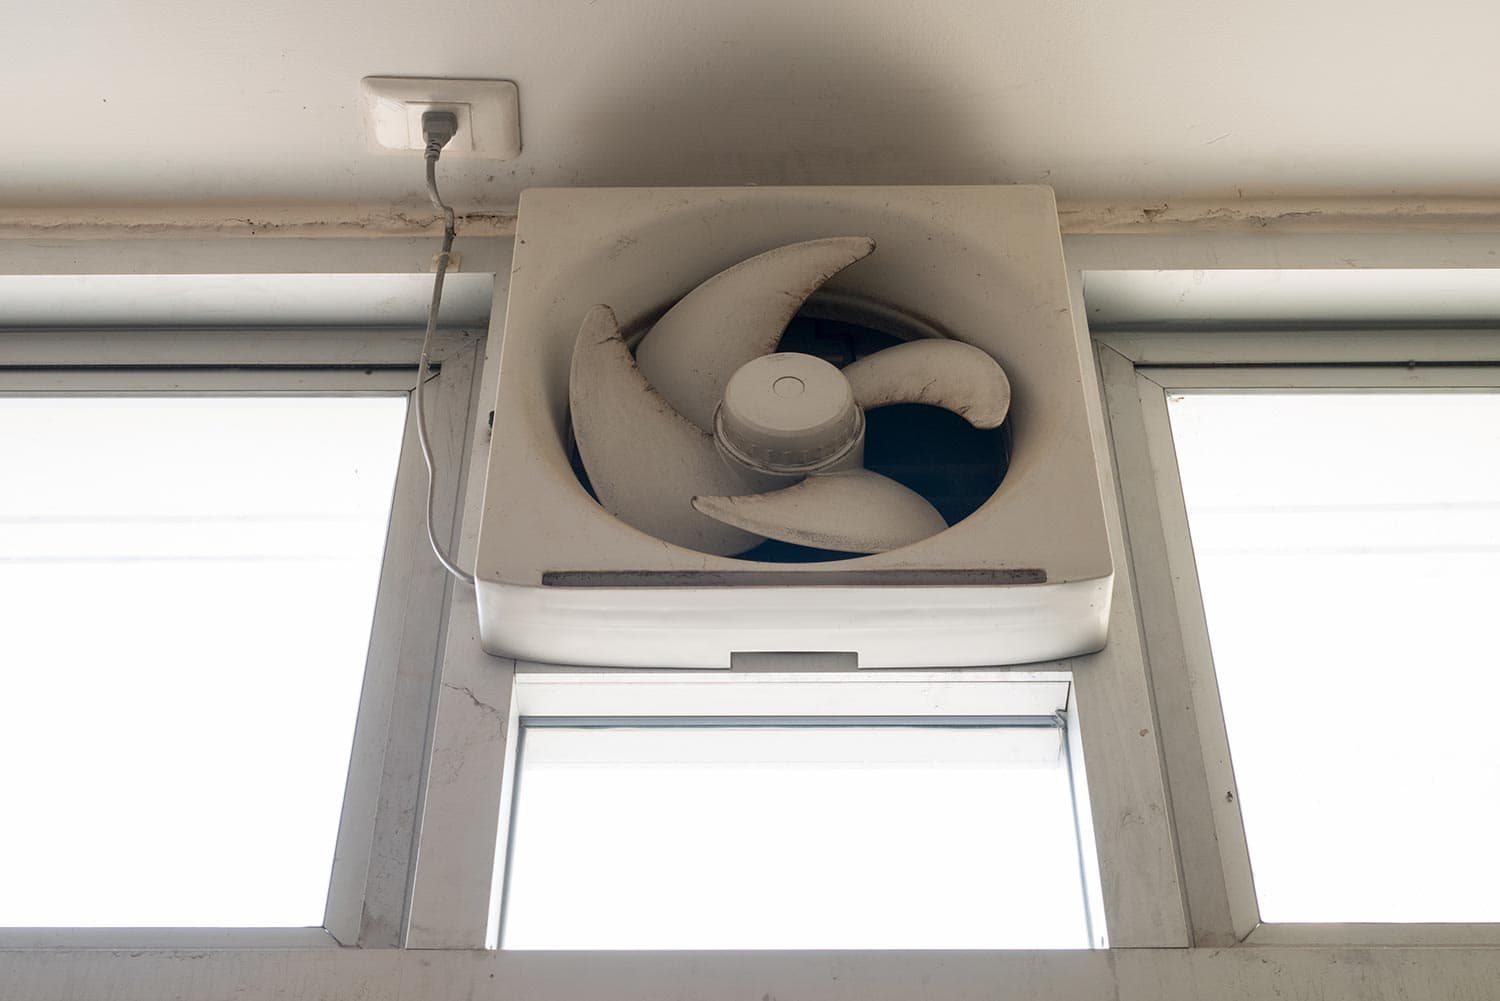 Dirty white ventilation fan in the window